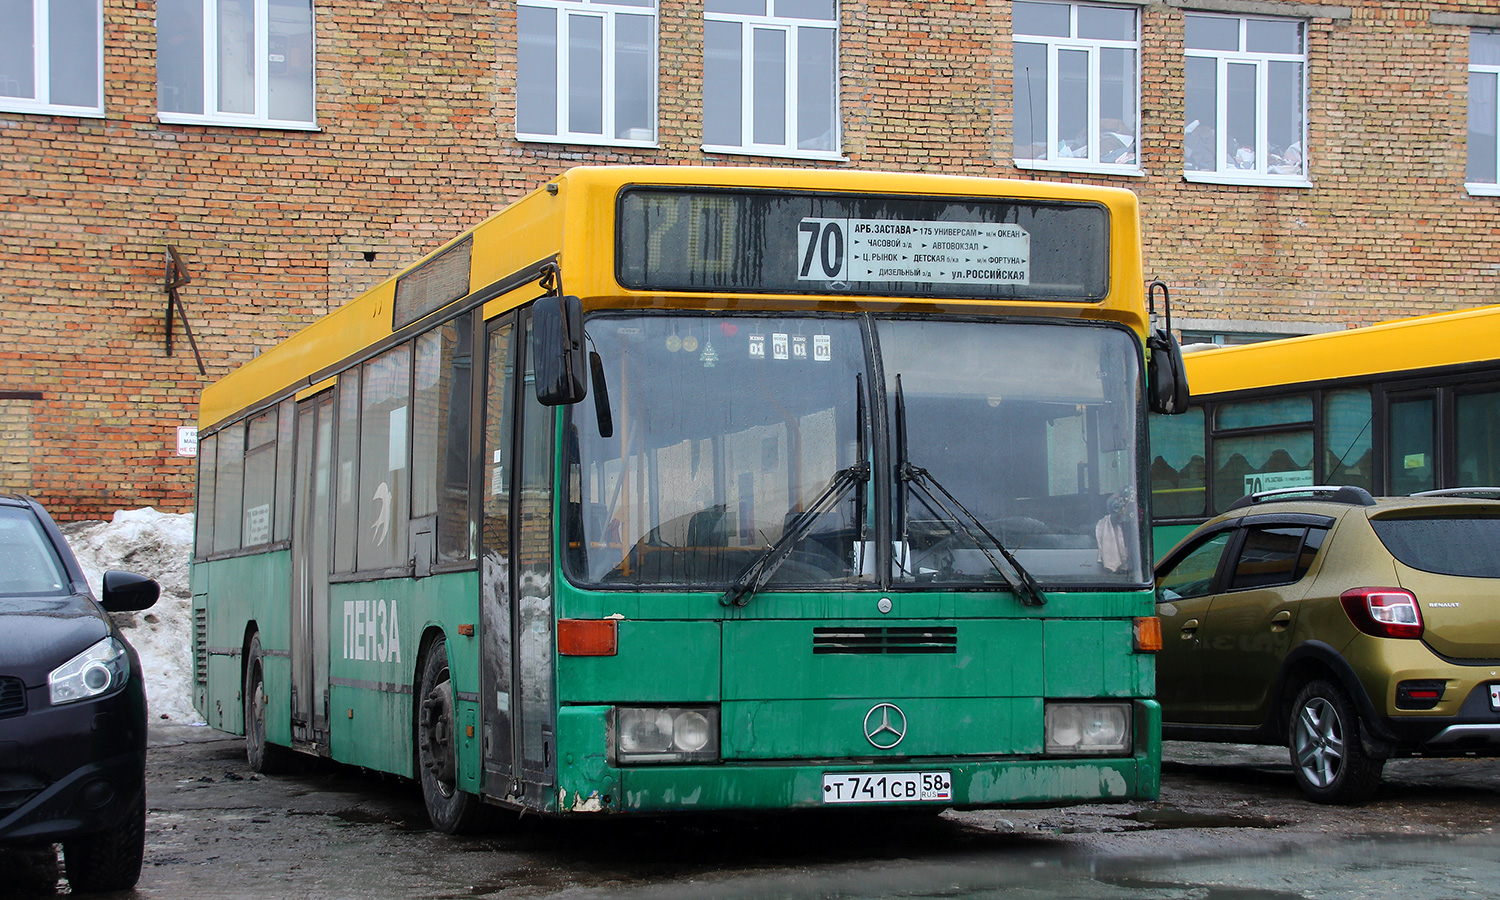 Пензенская область, Mercedes-Benz O405N2 № Т 741 СВ 58